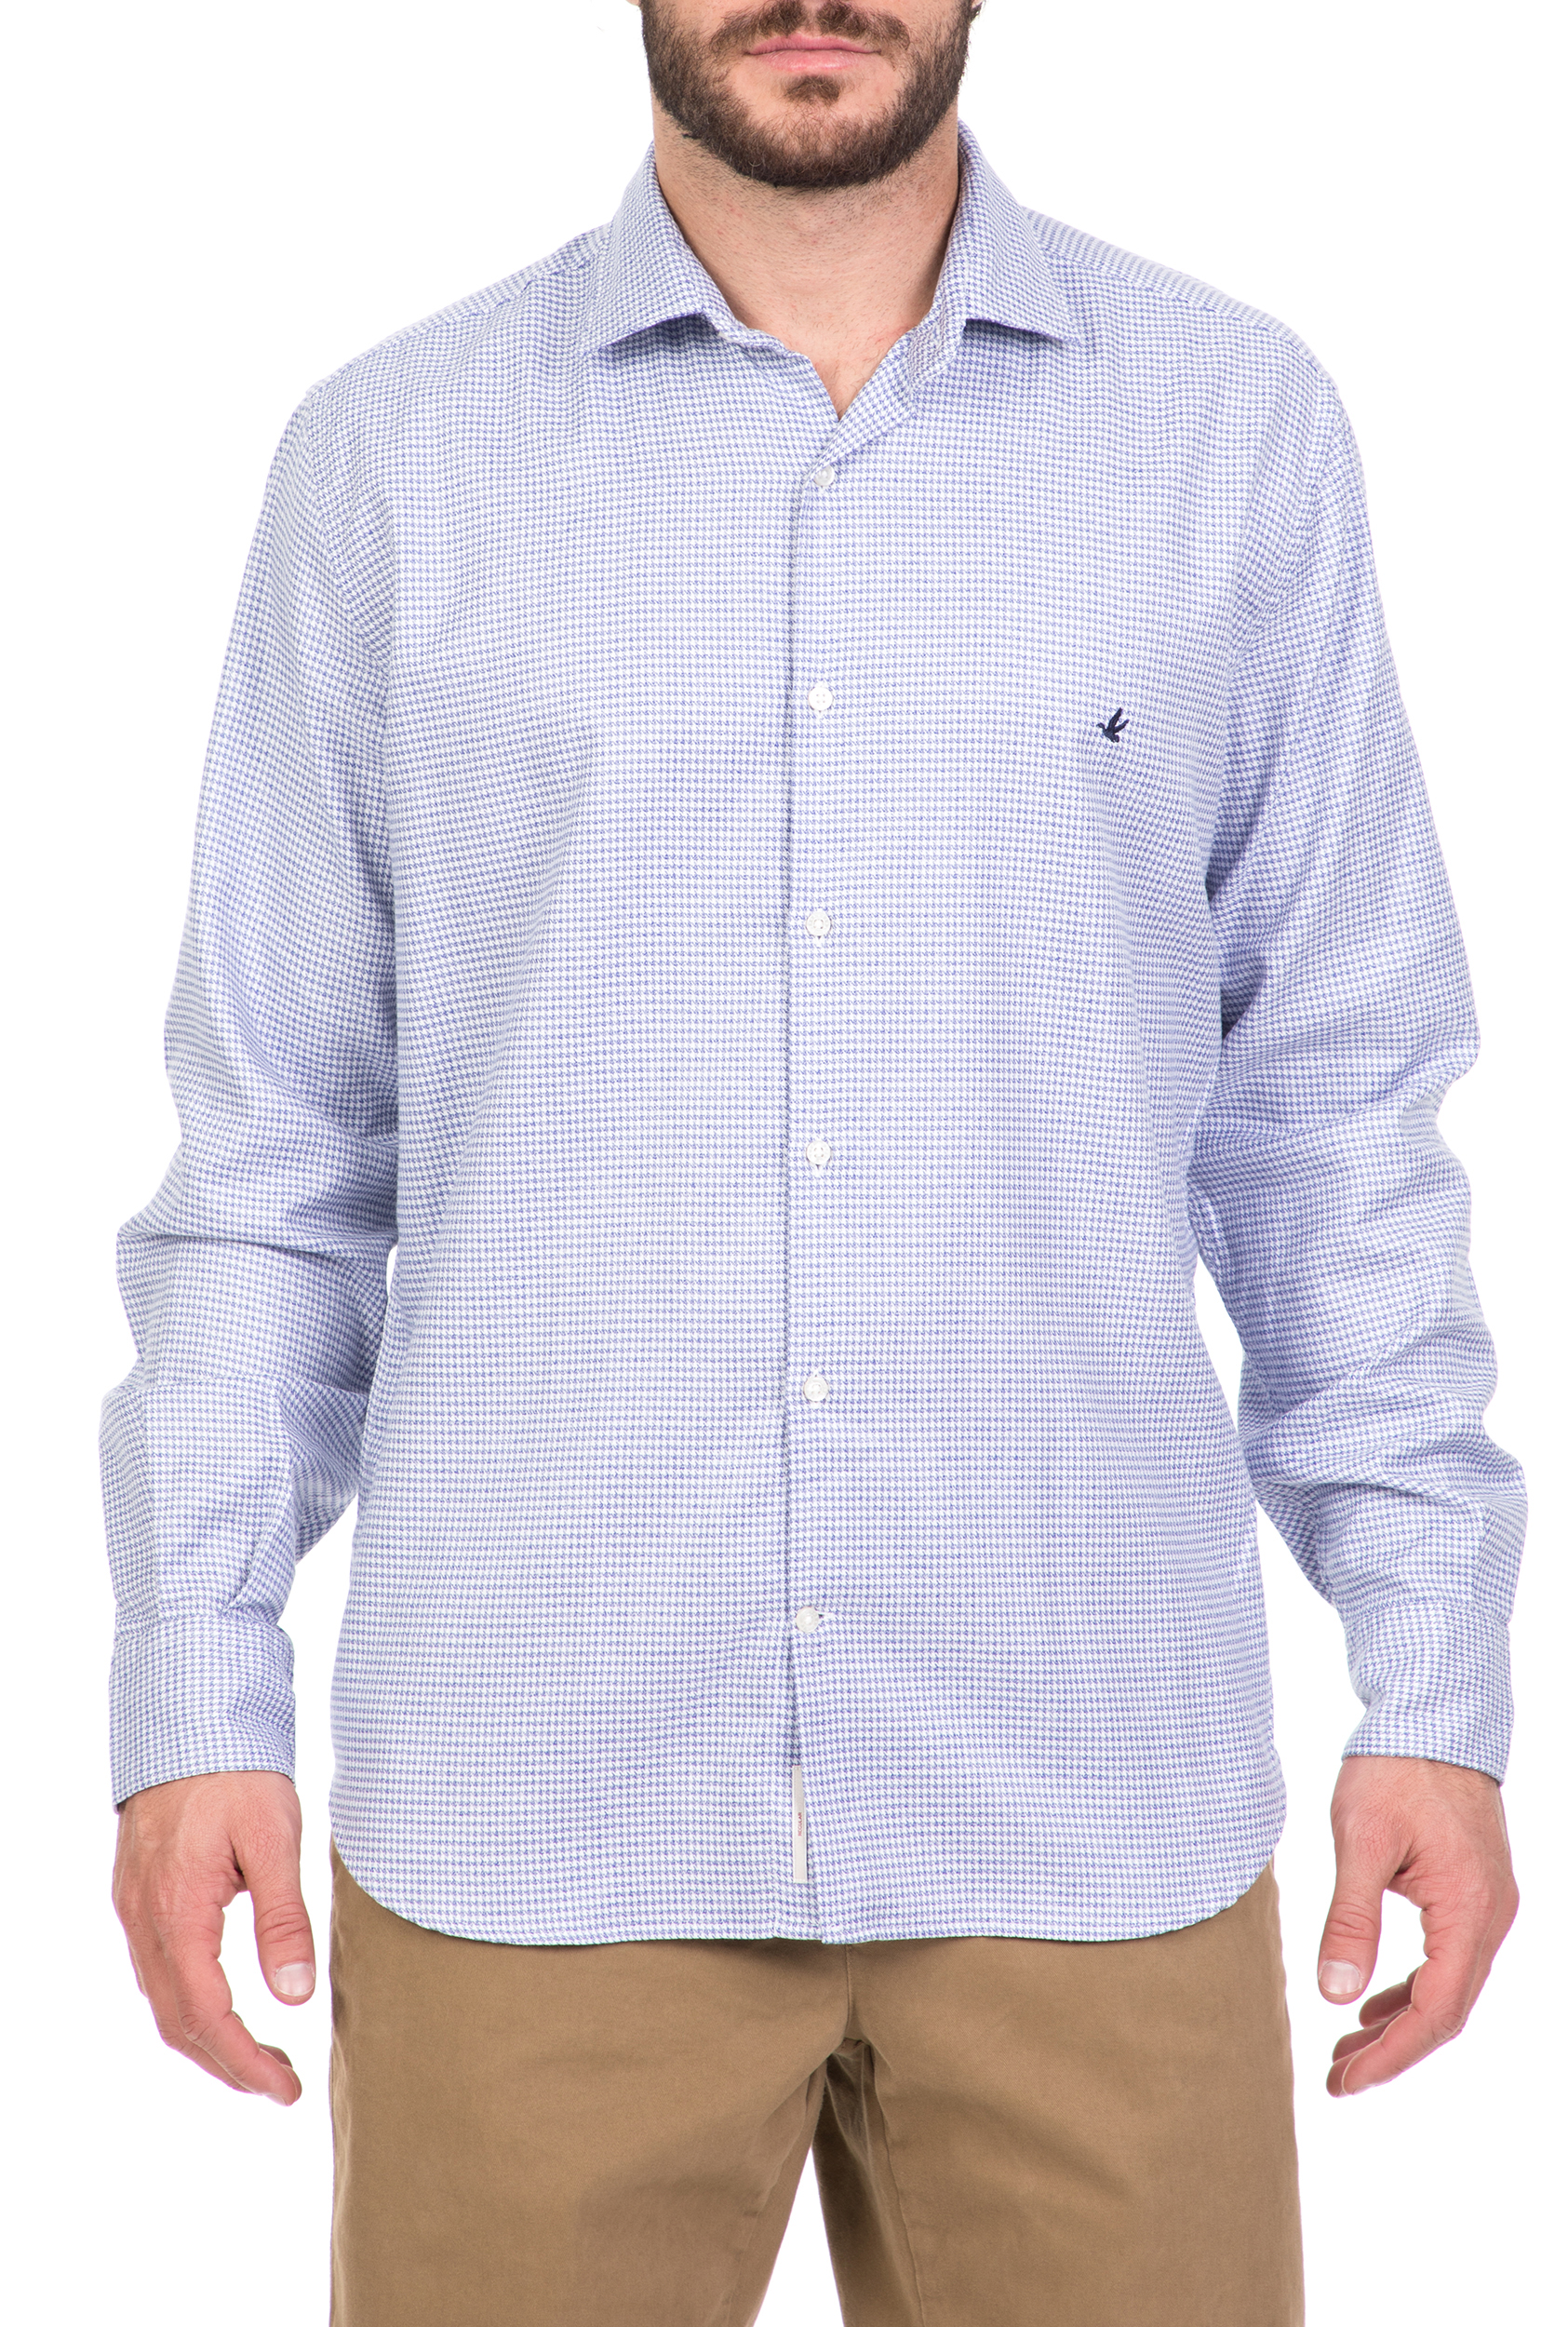 Ανδρικά/Ρούχα/Πουκάμισα/Μακρυμάνικα BROOKSFIELD - Ανδρικό μακρυμάνικο πουκάμισο BROOKSFIELD γαλάζιο